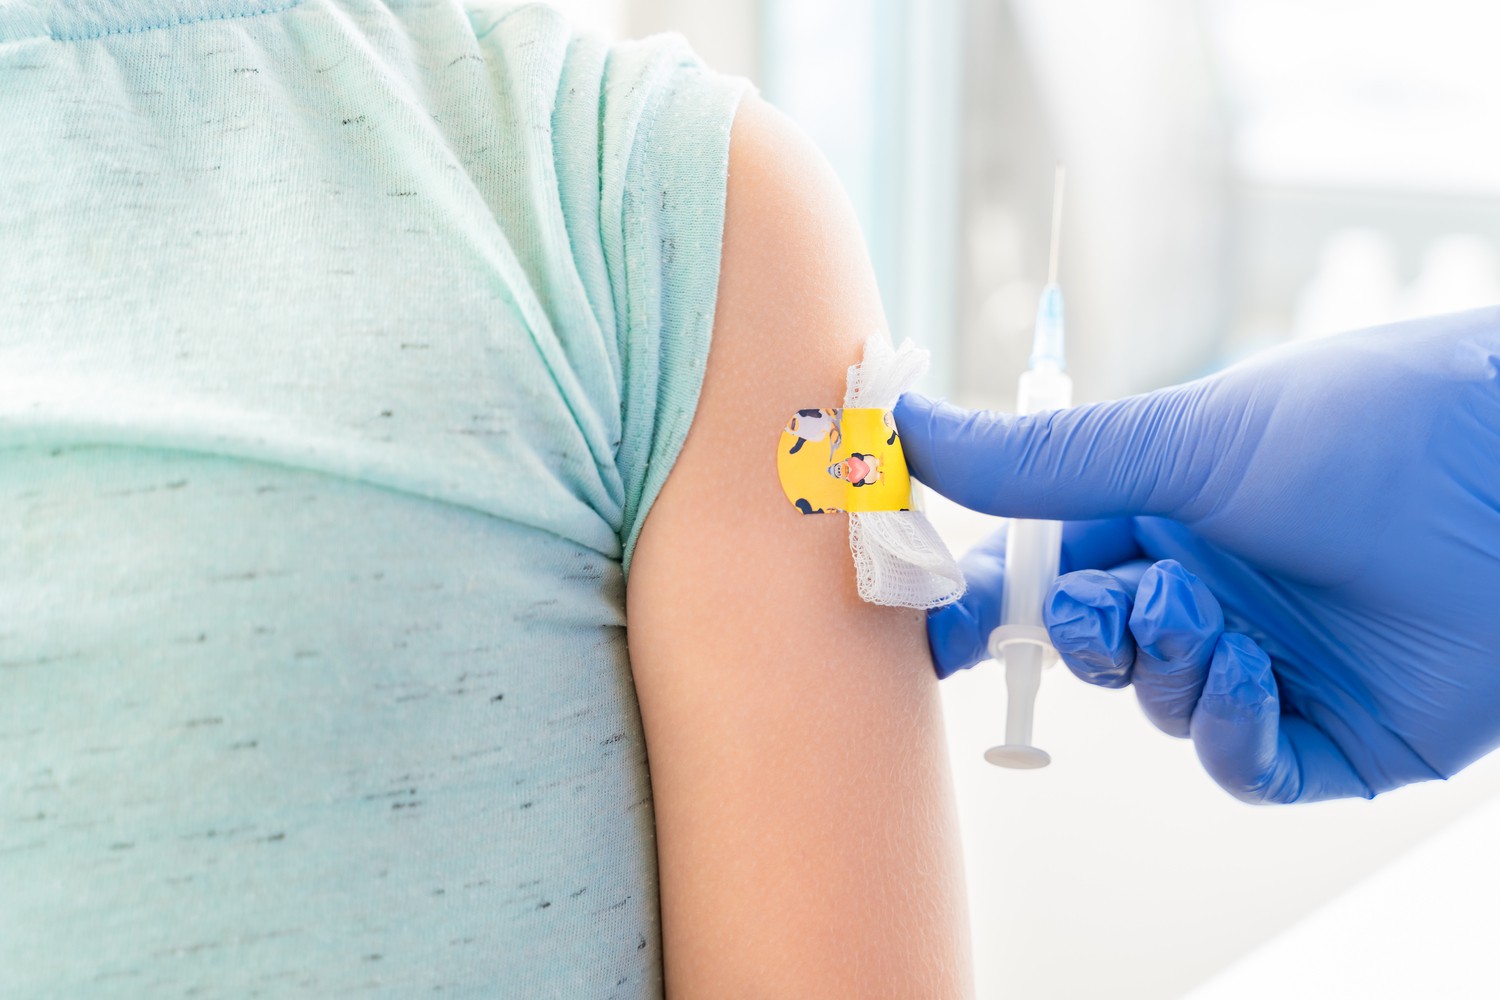 Termine bis 10. Februar frei: Kinder zwischen 5 und 11 Jahren können am UKL in der Liebigstraße ihre Schutzimpfungen gegen COVID-19 erhalten.